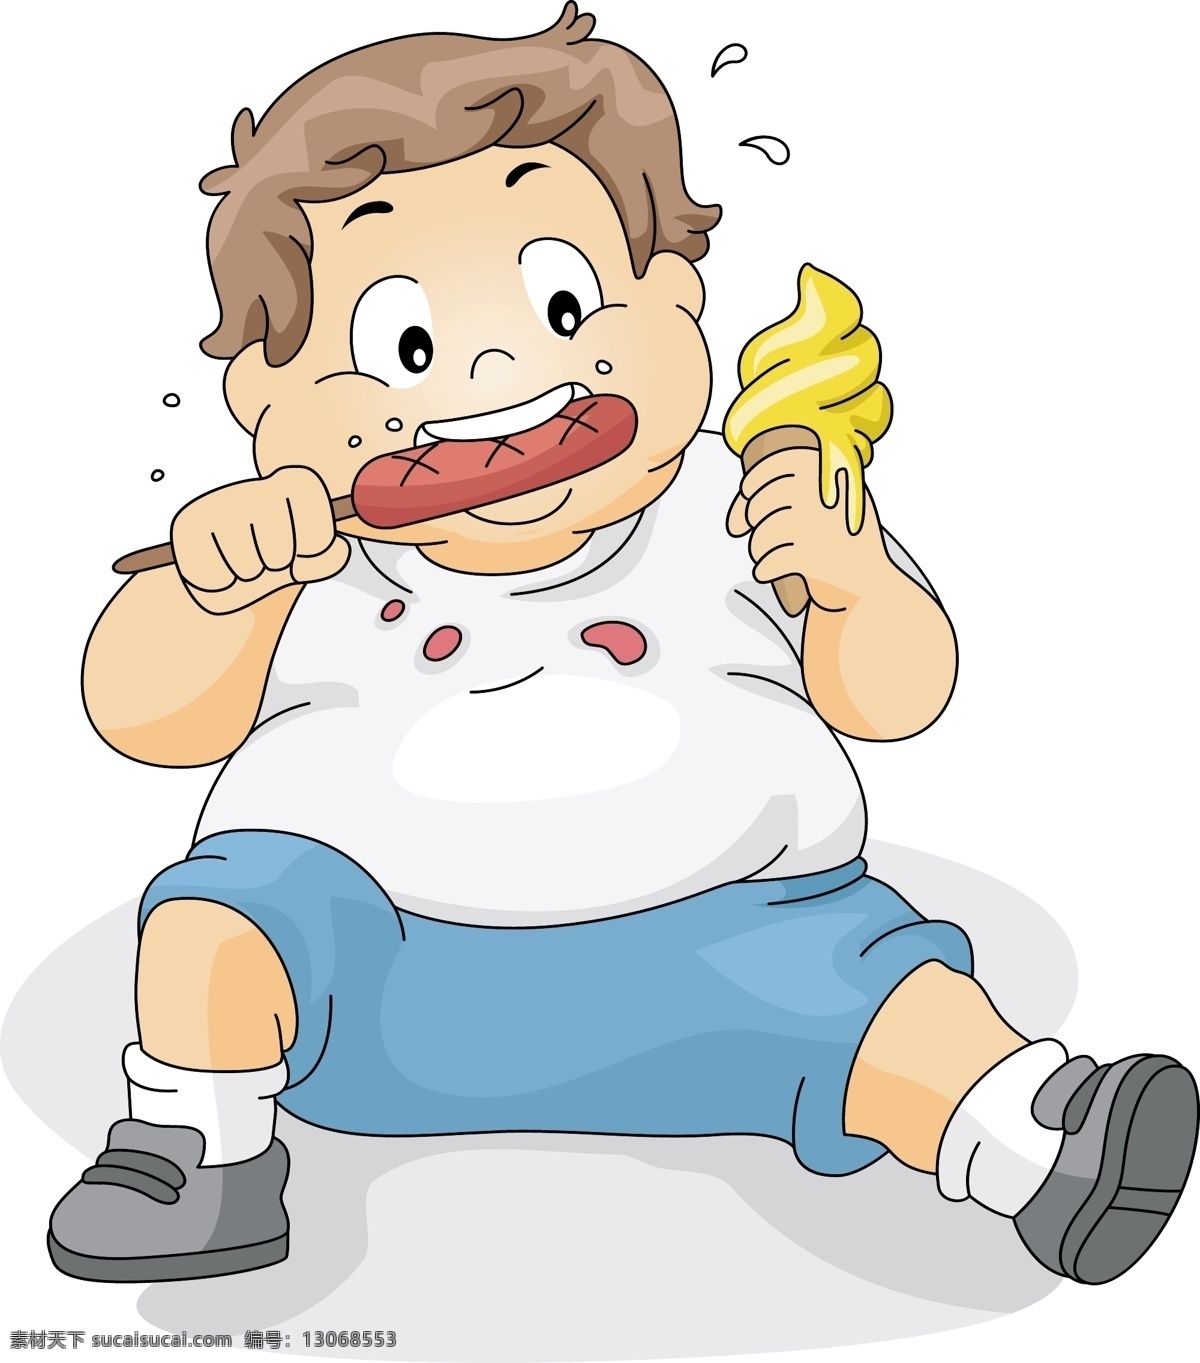 坐 吃 胖 儿童 插画 卡通画 人物 坐着吃 小孩 男孩 胖儿童 日常生活 矢量人物 矢量素材